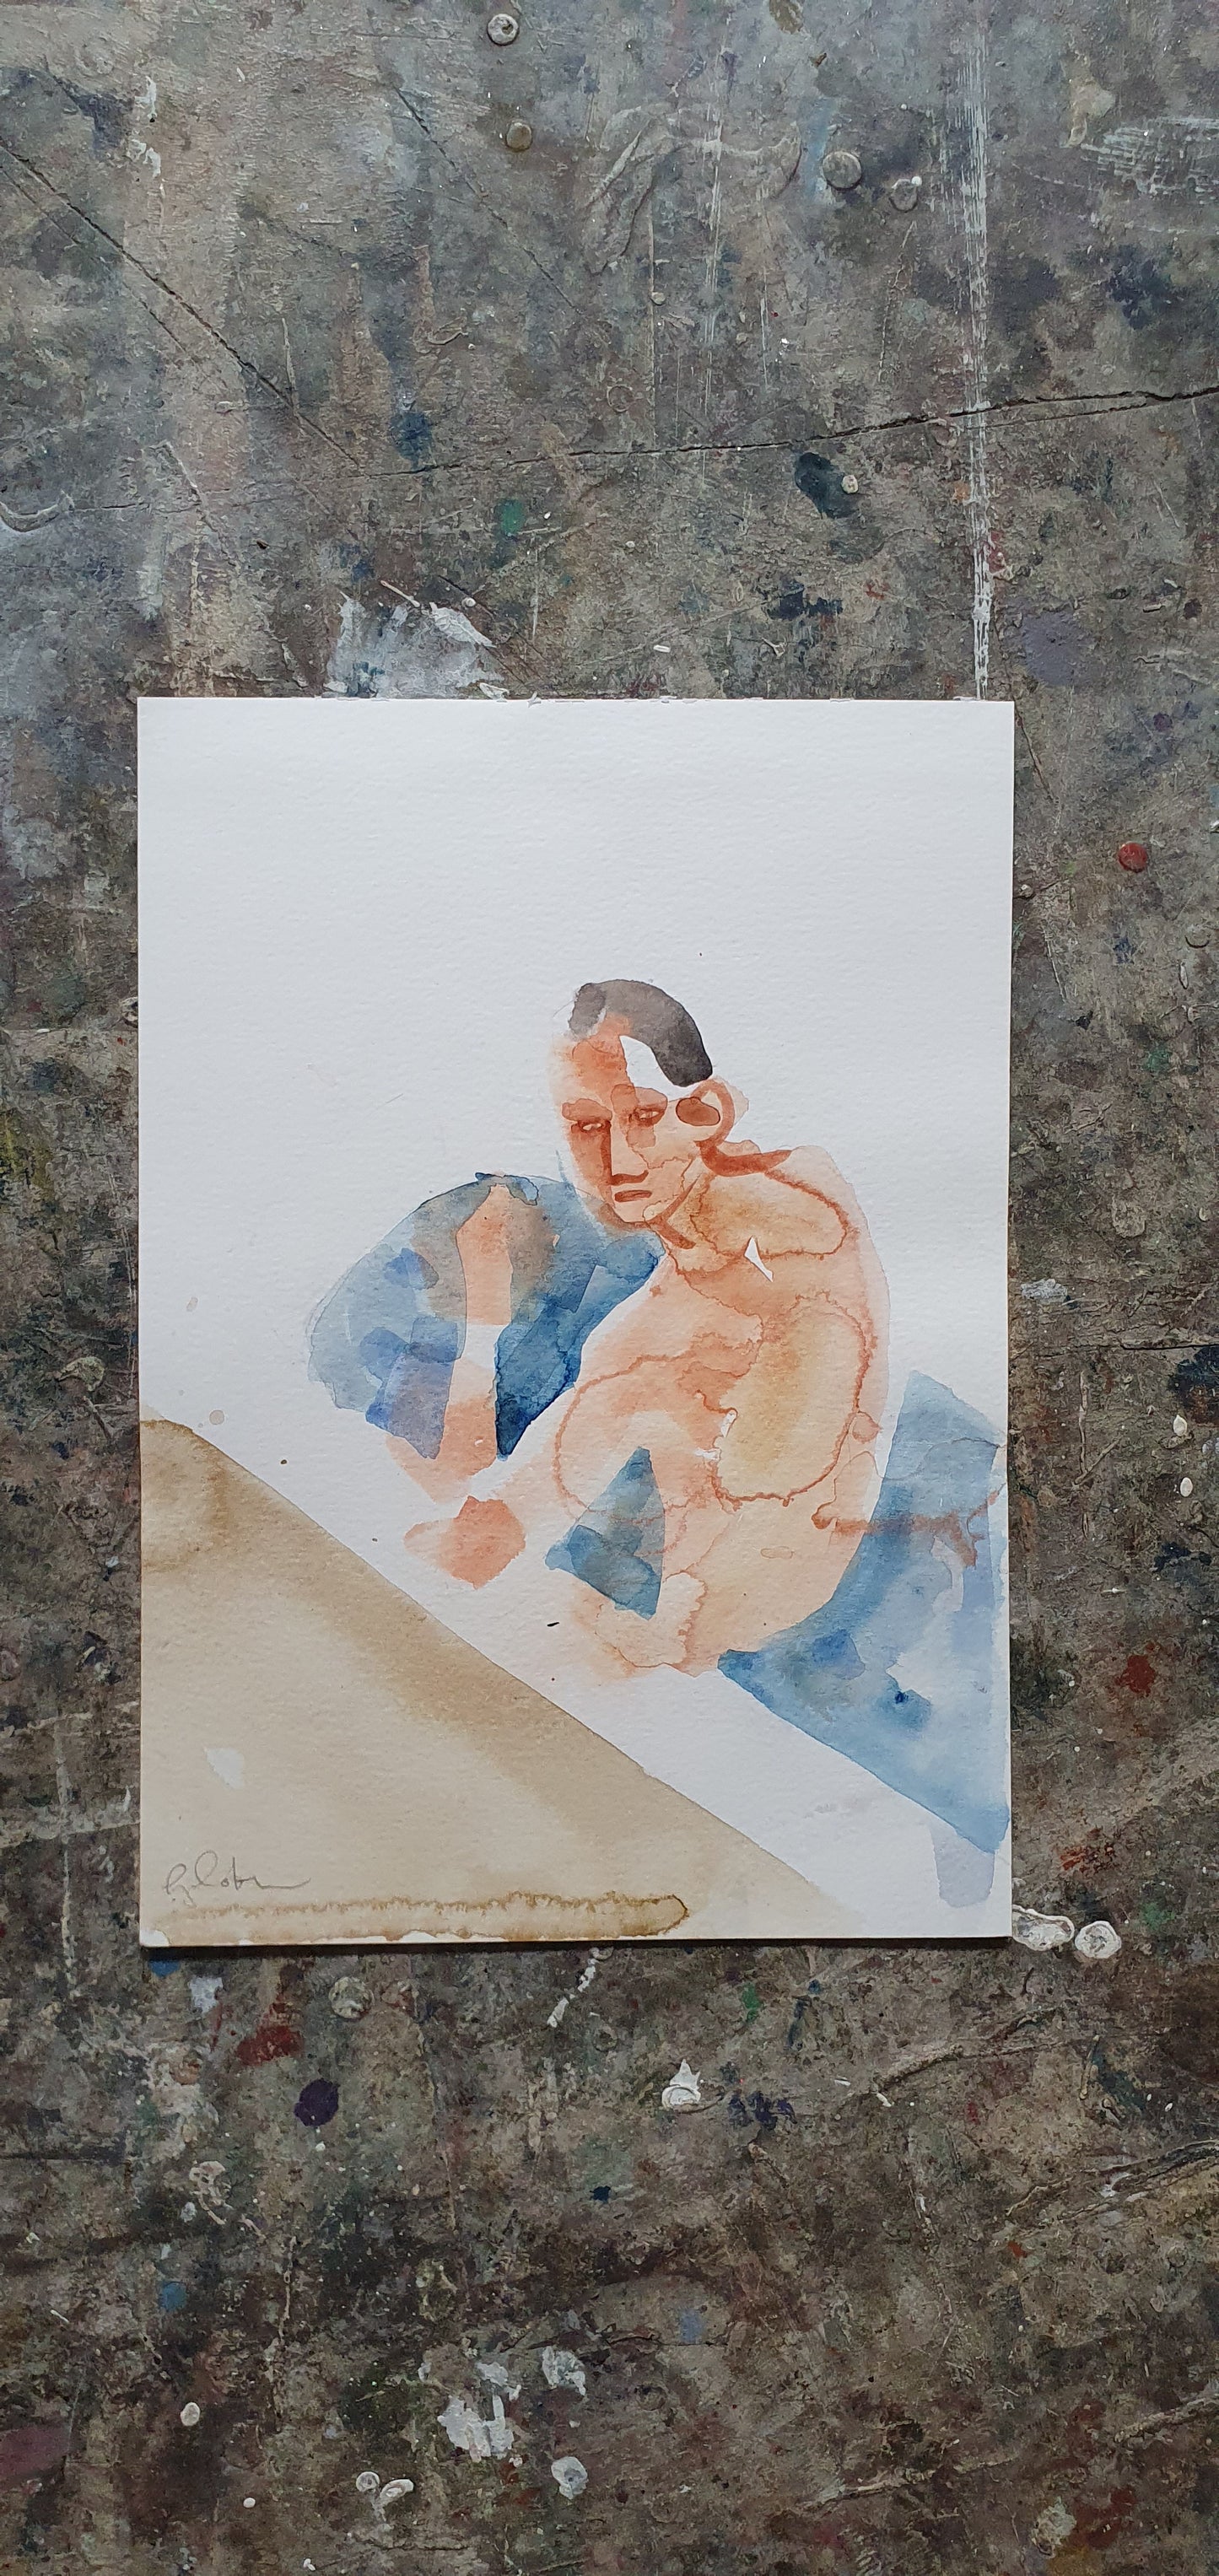 A Man In My Bathtub